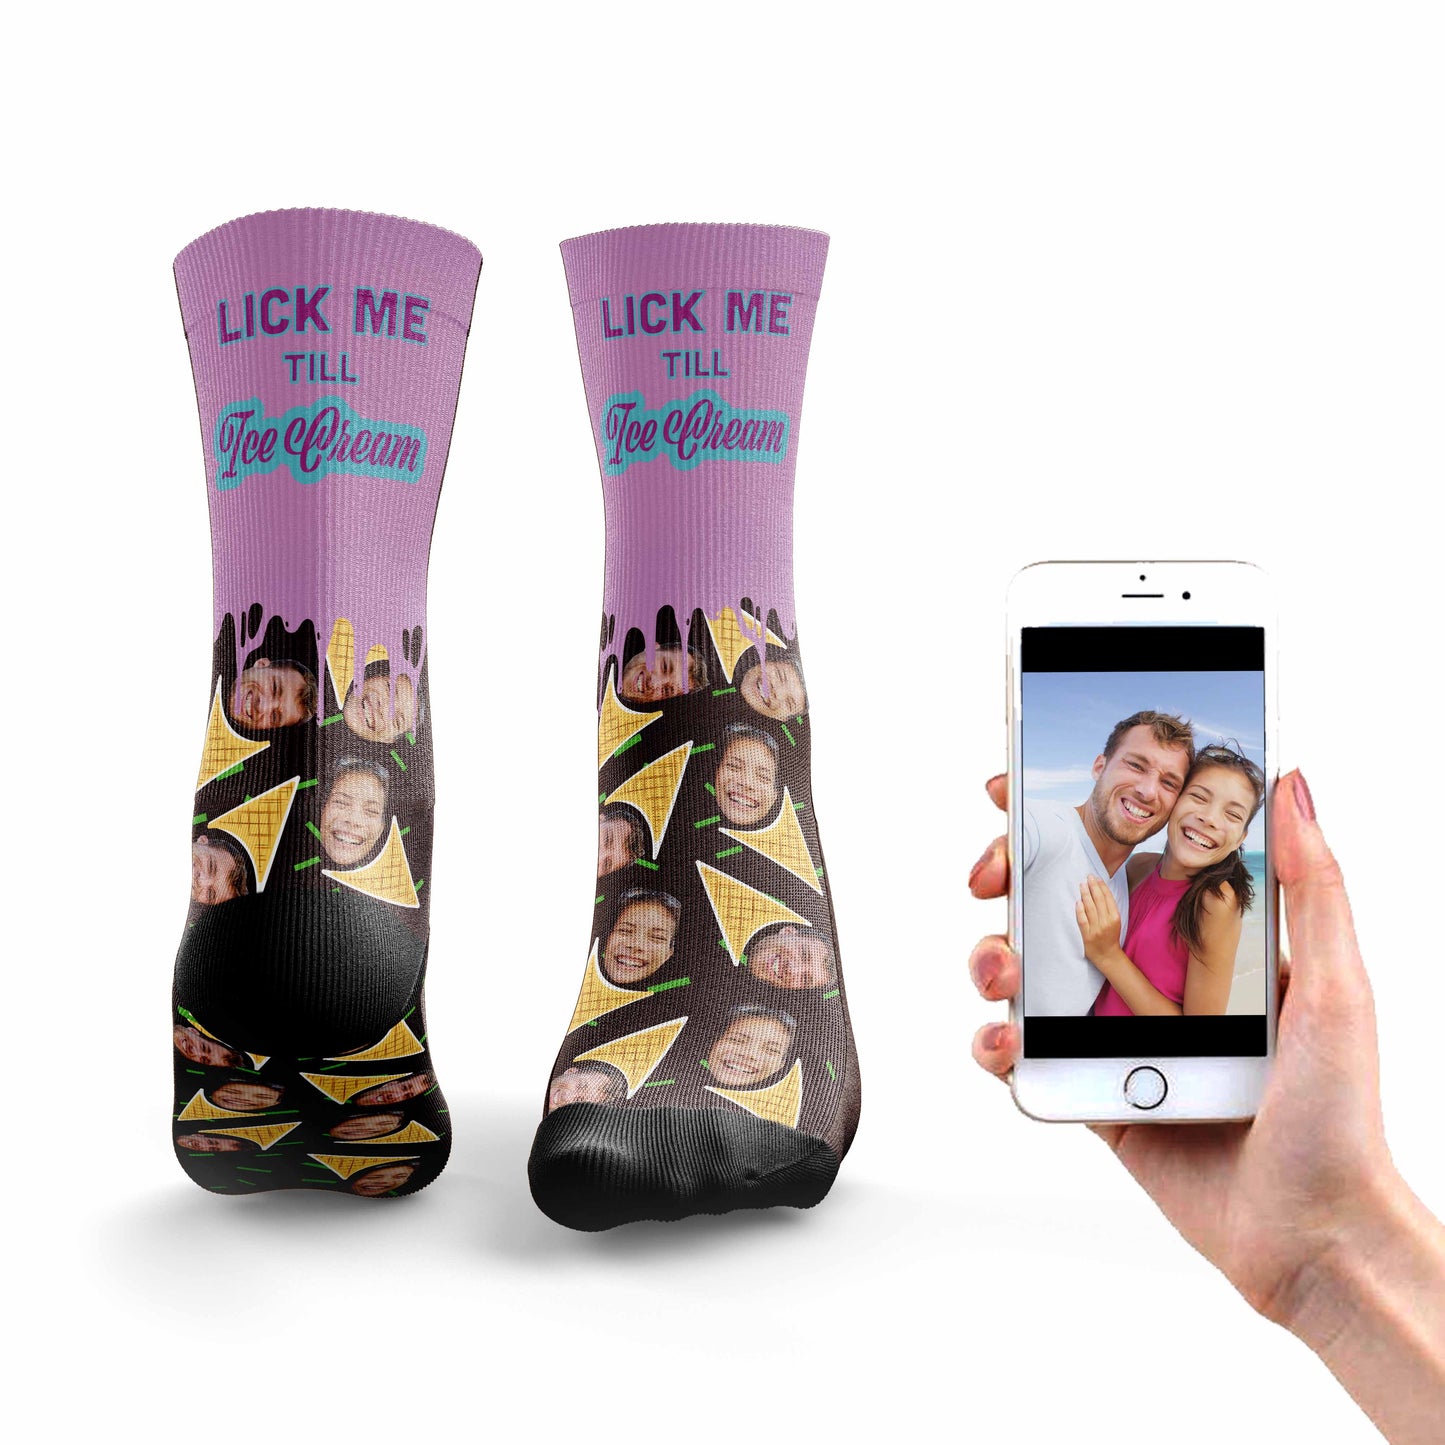 
                  
                    Lick Me Till Ice Cream Socks
                  
                